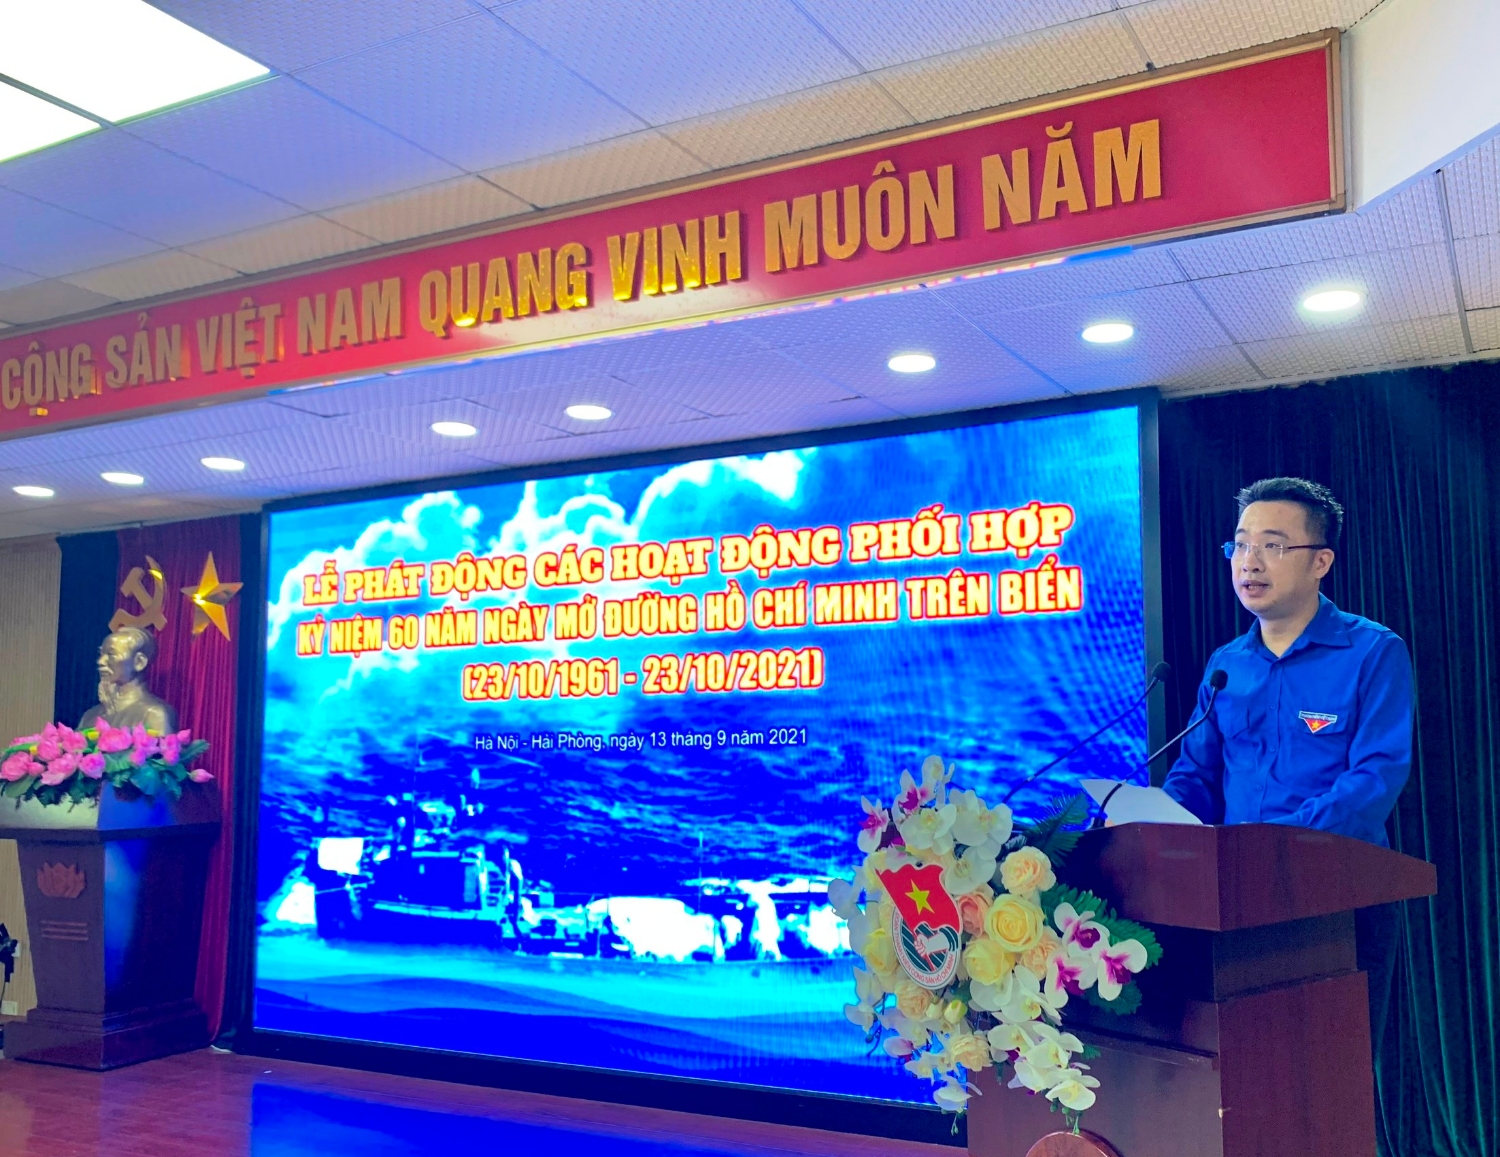 Bí thư Trung ương Đoàn Nguyễn Tường Lâm mong muốn các hoạt động kỷ niệm 60 năm mở đường Hồ Chí Minh trên biển sẽ trở thành đợt sinh hoạt chính trị rộng rãi trong đoàn viên, thanh niên cả nước.